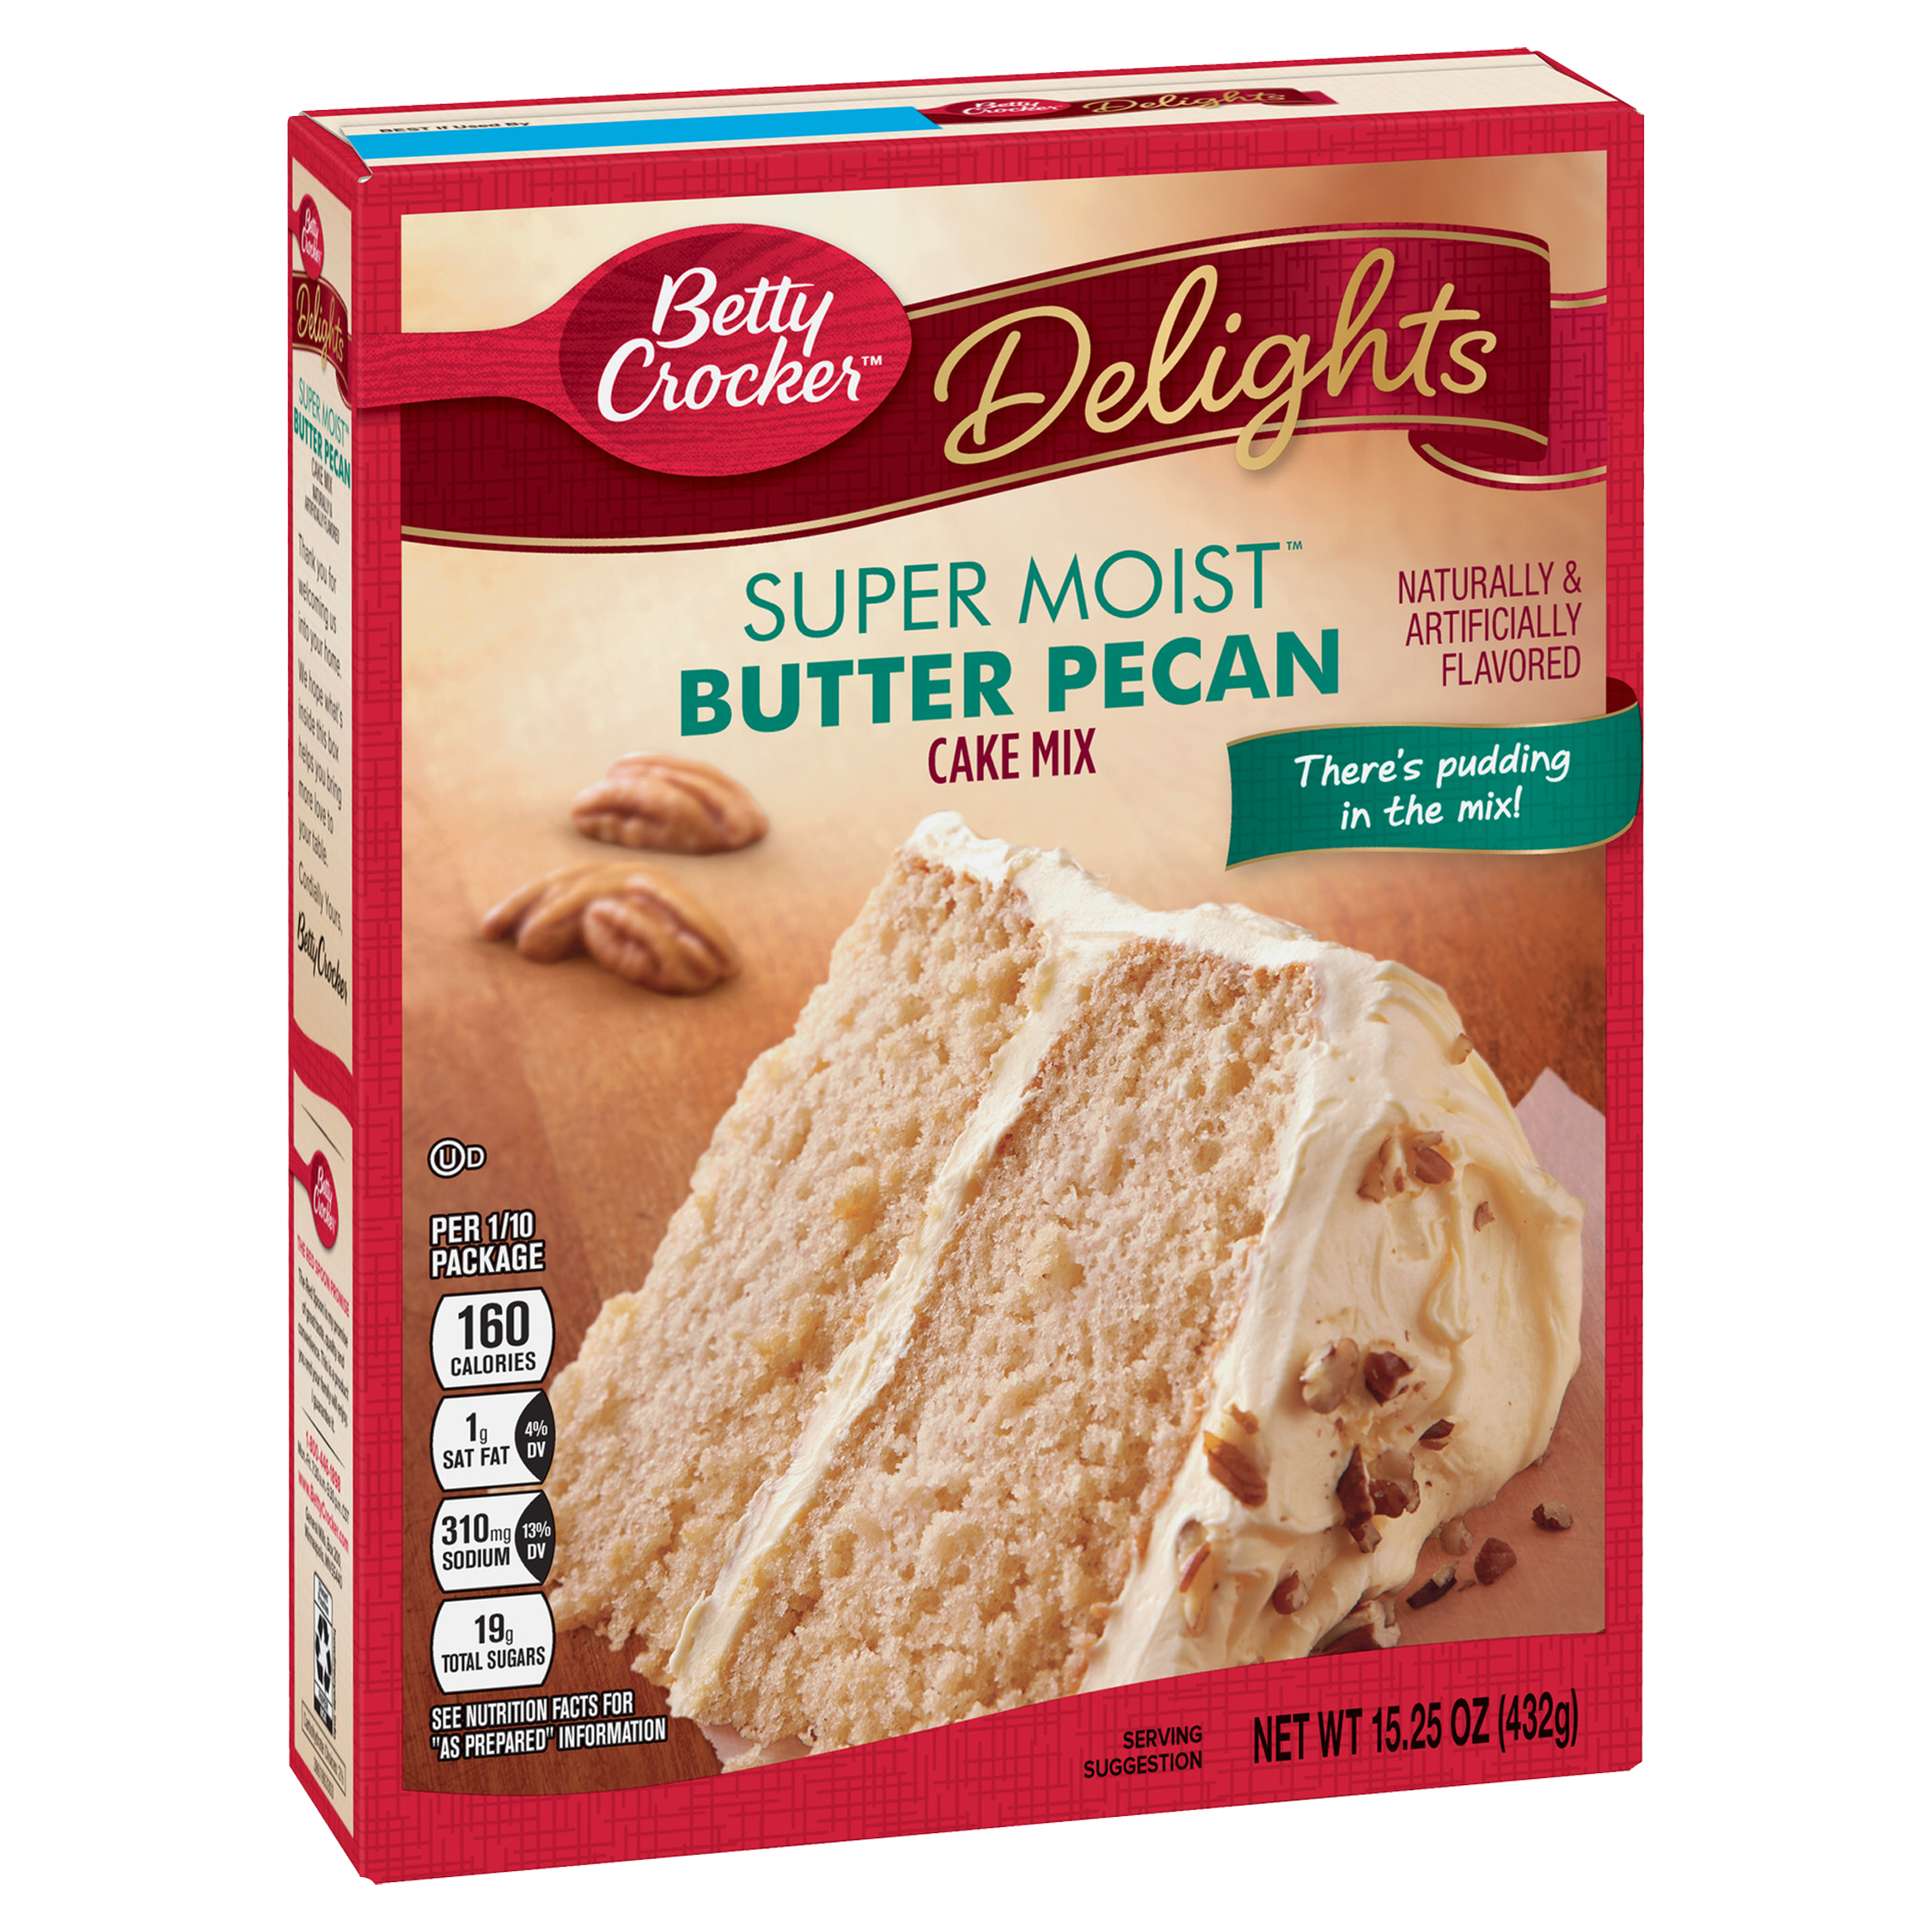 Cake　Delights　Super　Pecan　Mix　Moist　Crocker　Betty　Butter